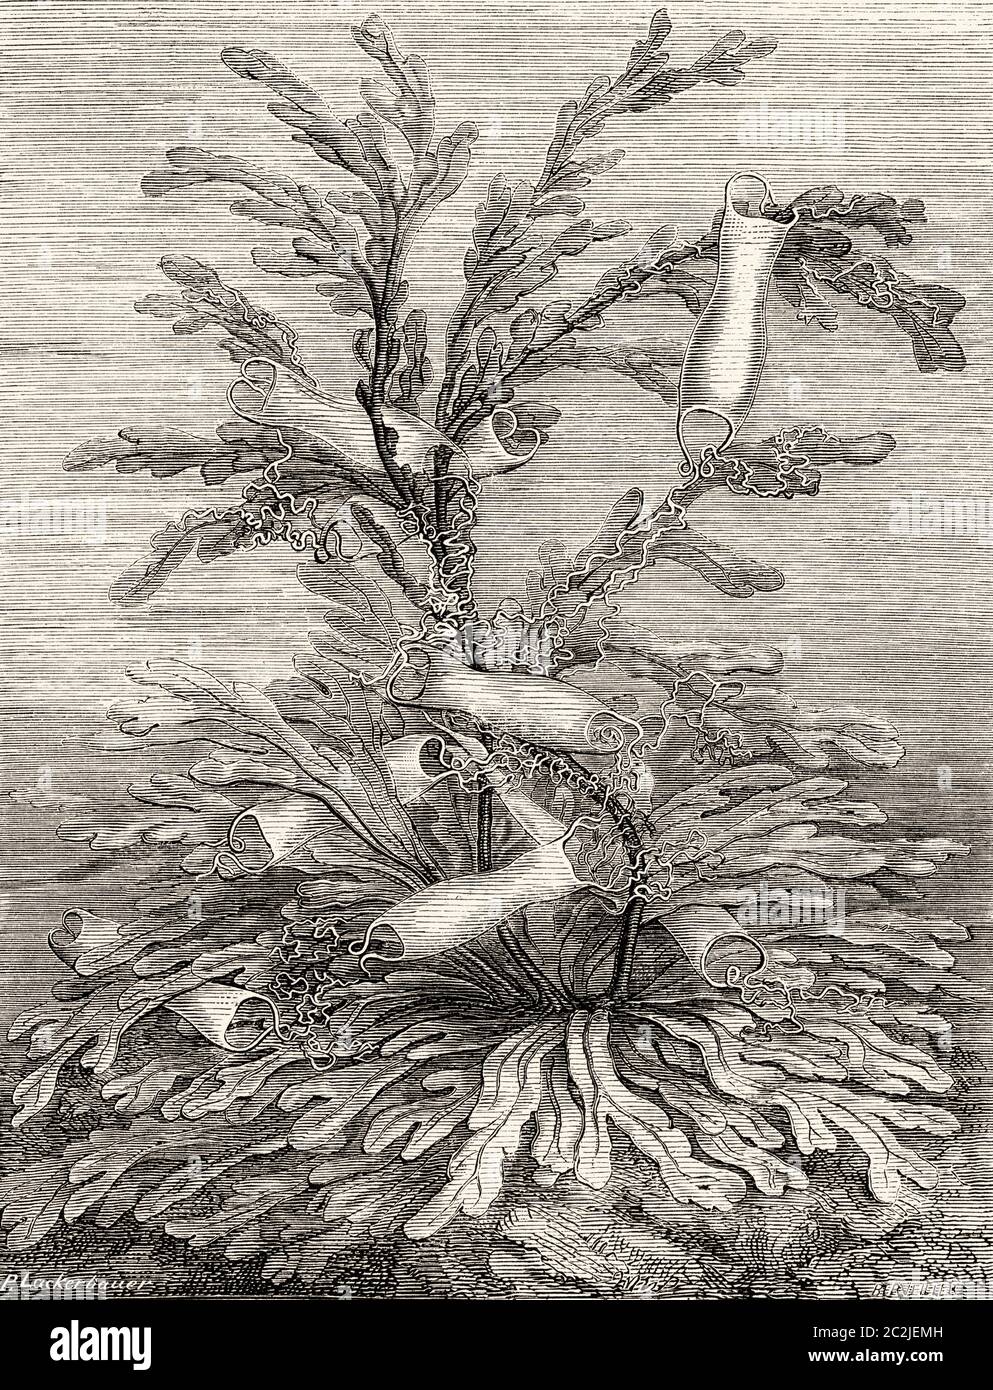 Uovo di squalo di gatto. L'alitano (Sciliorhinus stellaris) è una specie di elastobranca carriniforme della famiglia degli Sciliorhinidi, comune della costa europea e dell'Africa settentrionale. Illustrazione incisa del 19 ° secolo, El Mundo Ilustrado 1880 Foto Stock